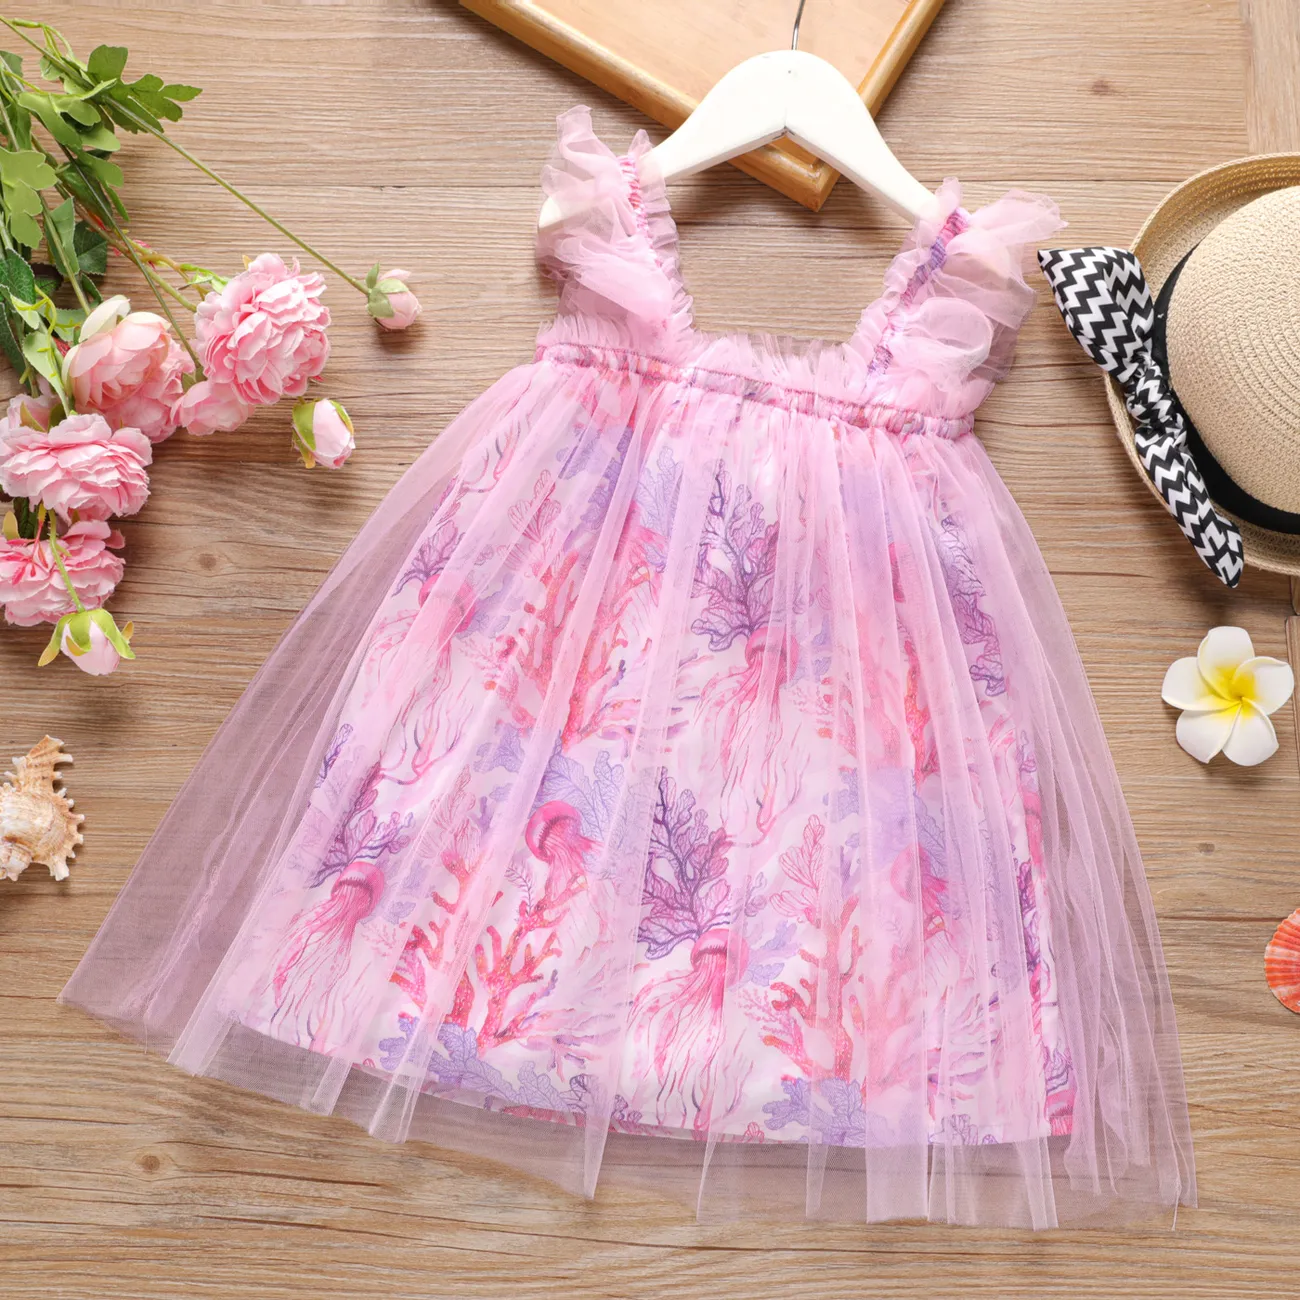 Toddler Girl Allover Floral Print Slip Overlay Dress  big image 1